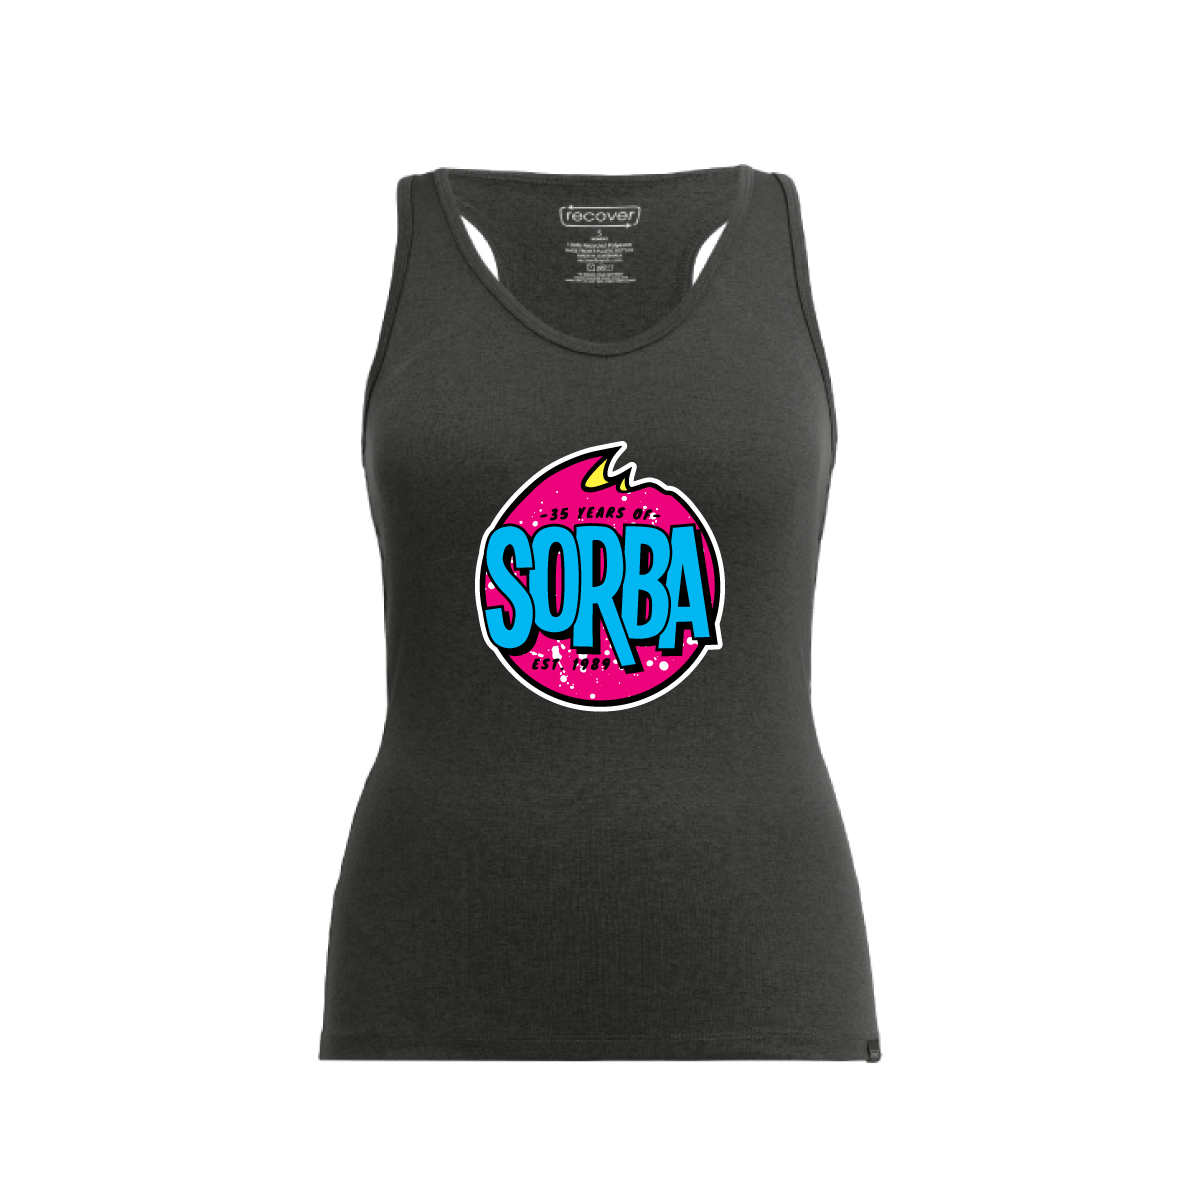 RD3000 - SORBA Women's Sport Tank